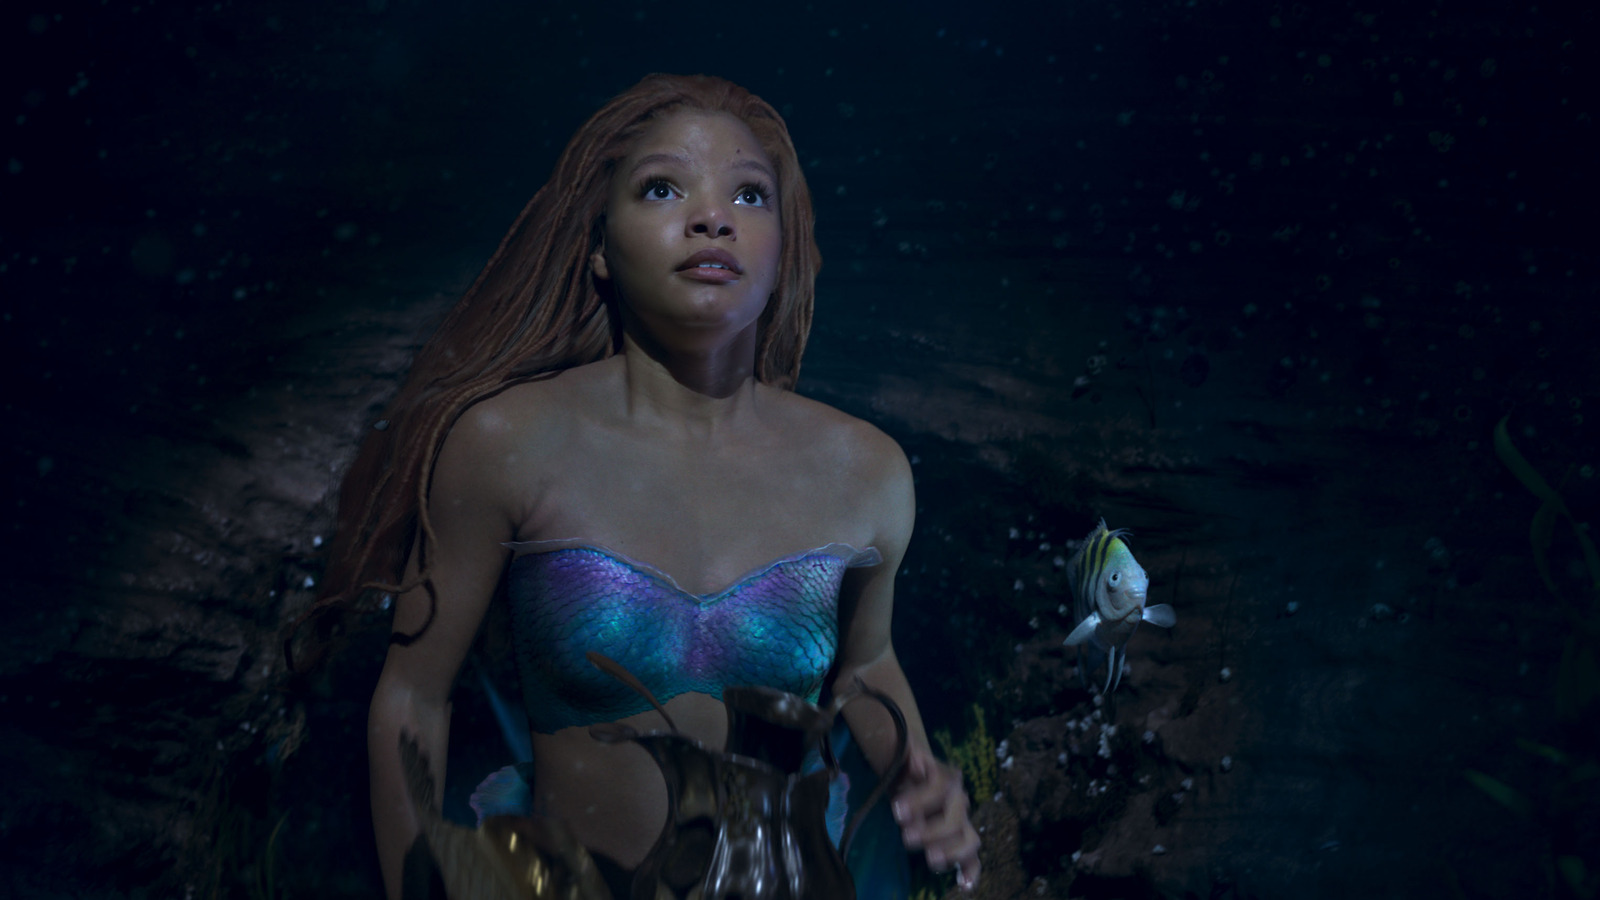 The Little mermaid azaleasdolls in 2023